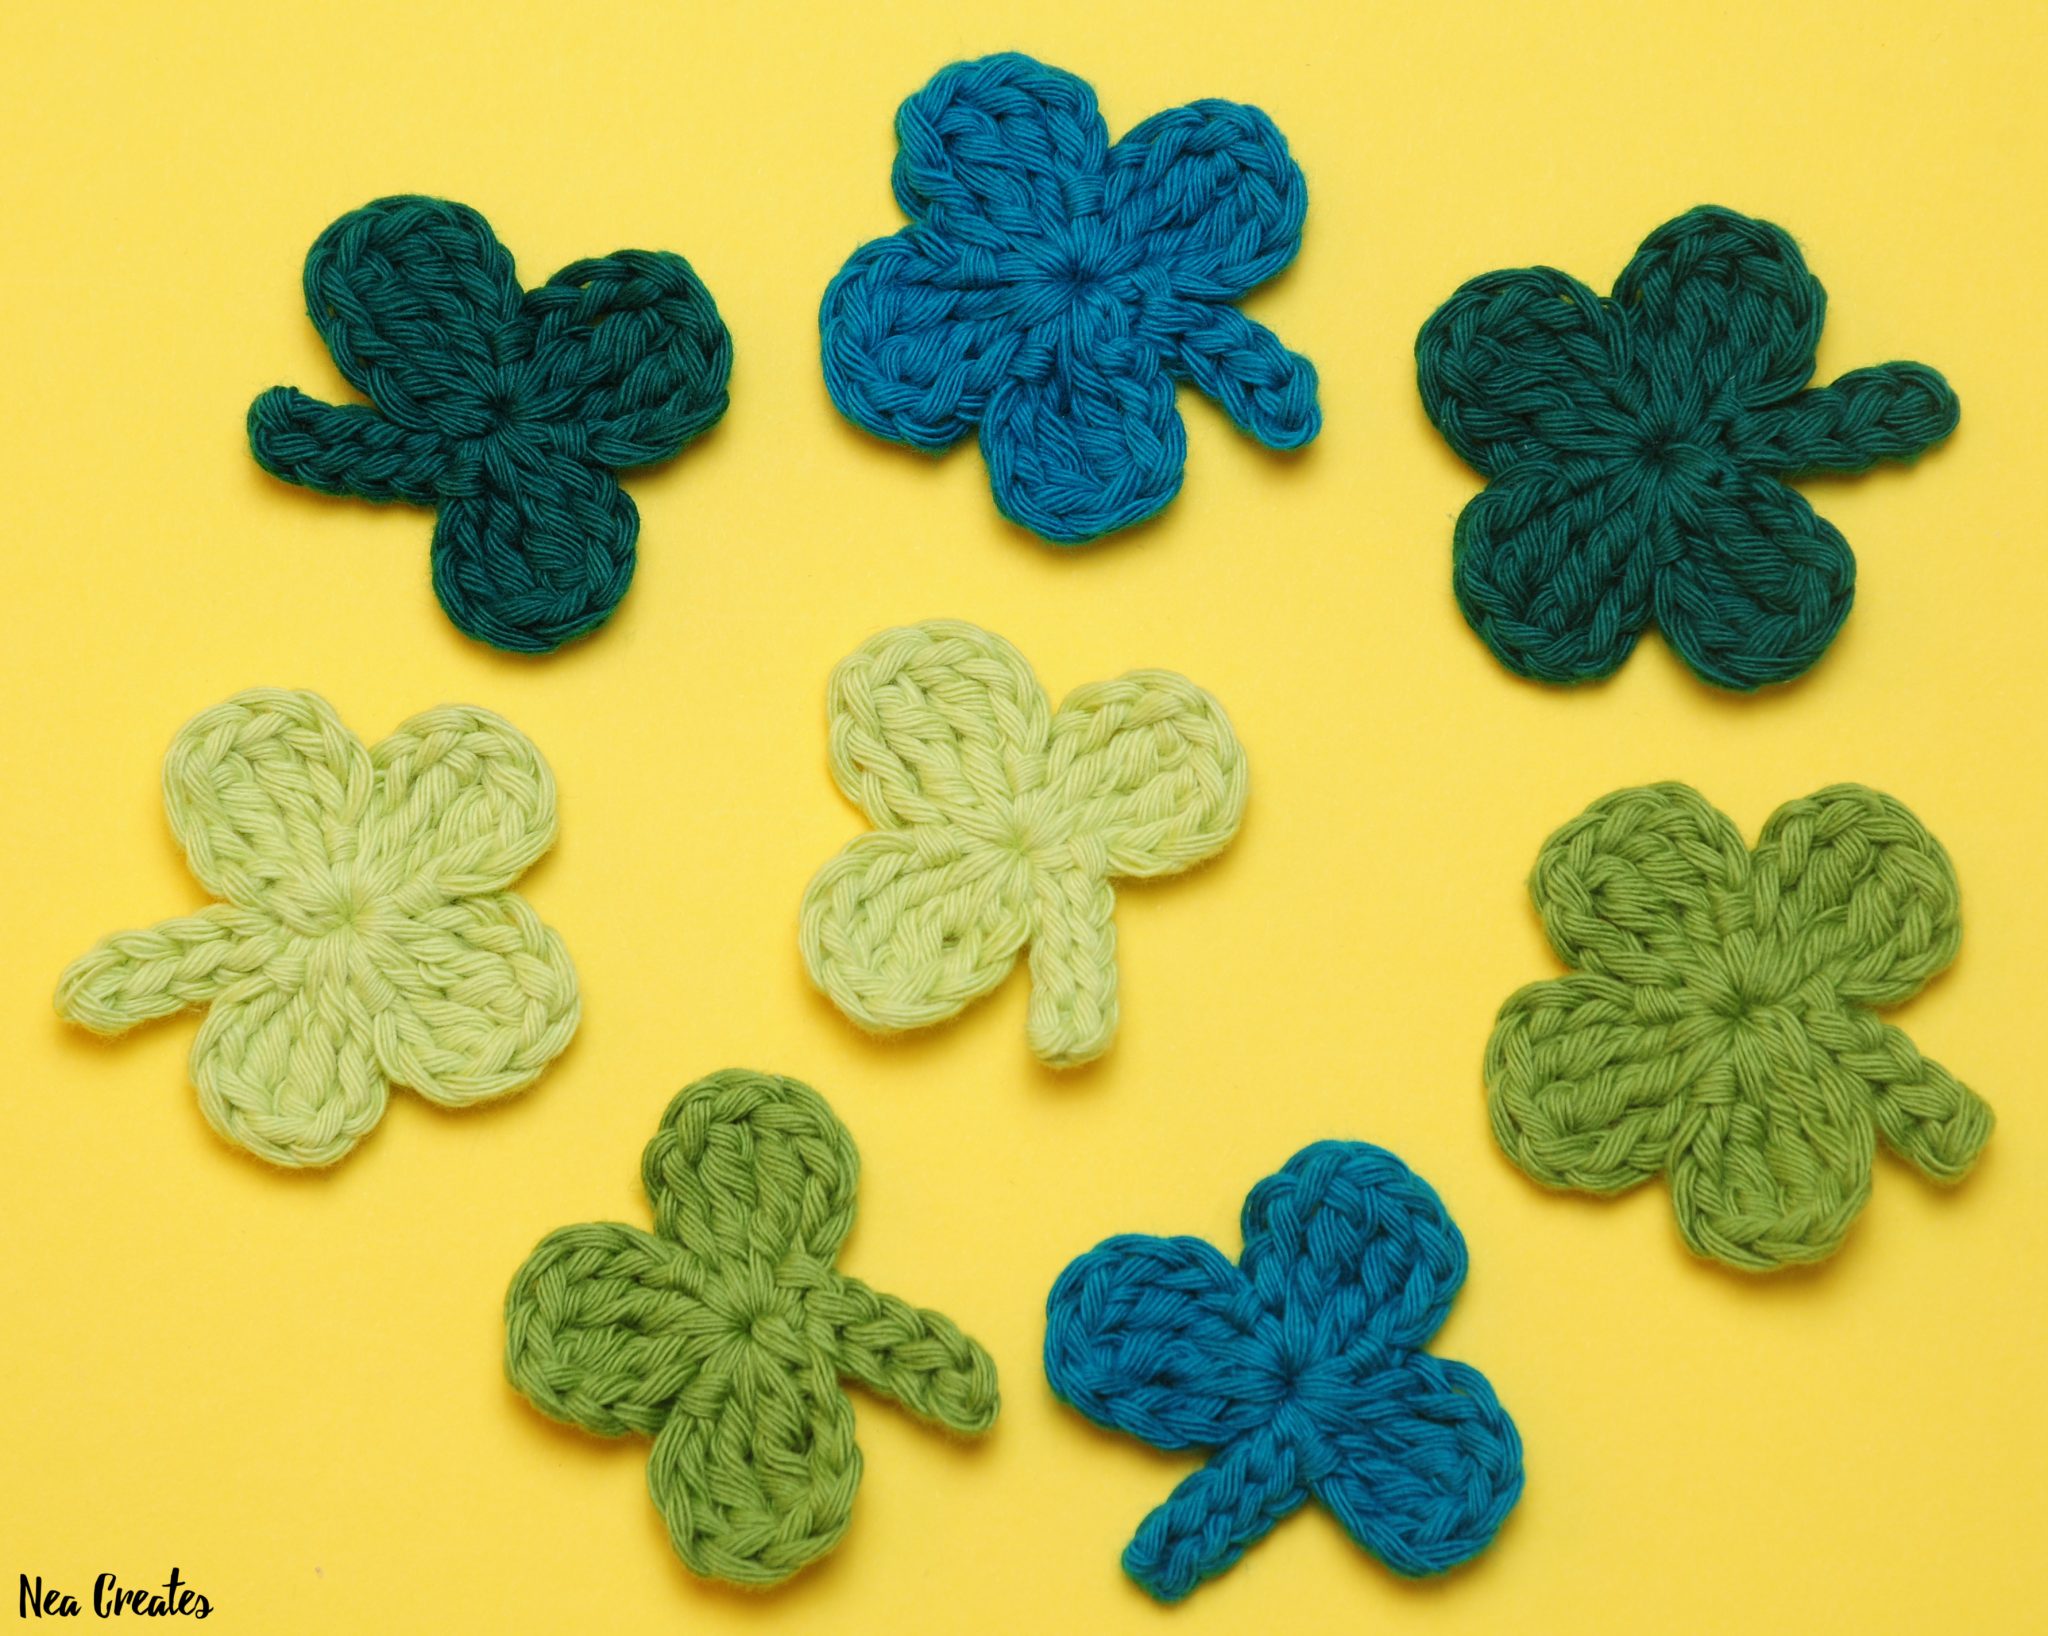 Four Leaf Clover Applique: Crochet pattern